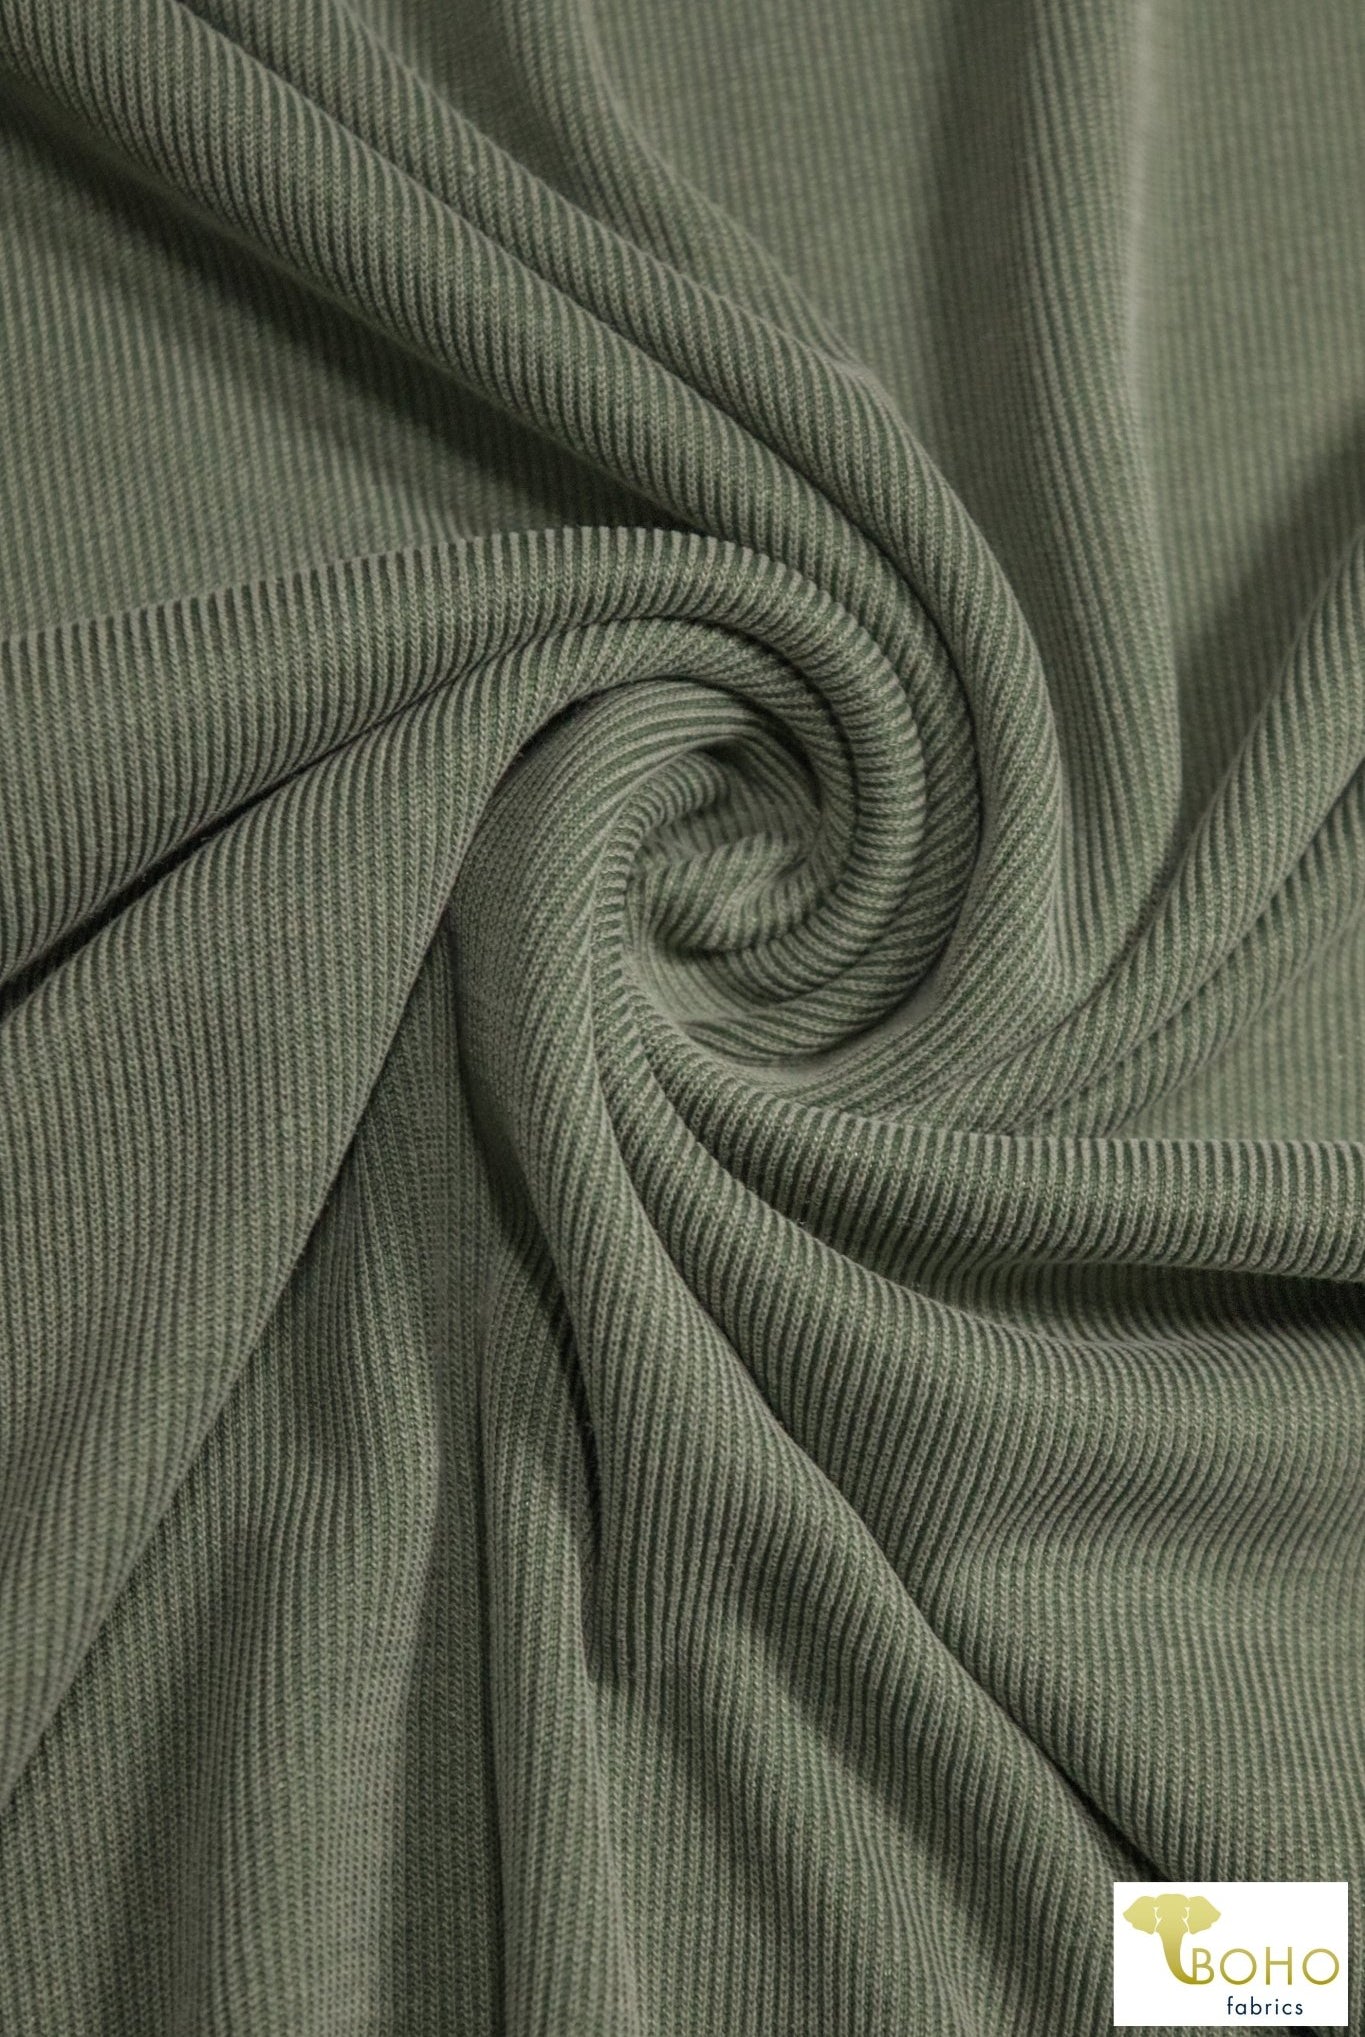 Green, Cupro Rib Knit. CUP.R-112-GRN - Boho Fabrics